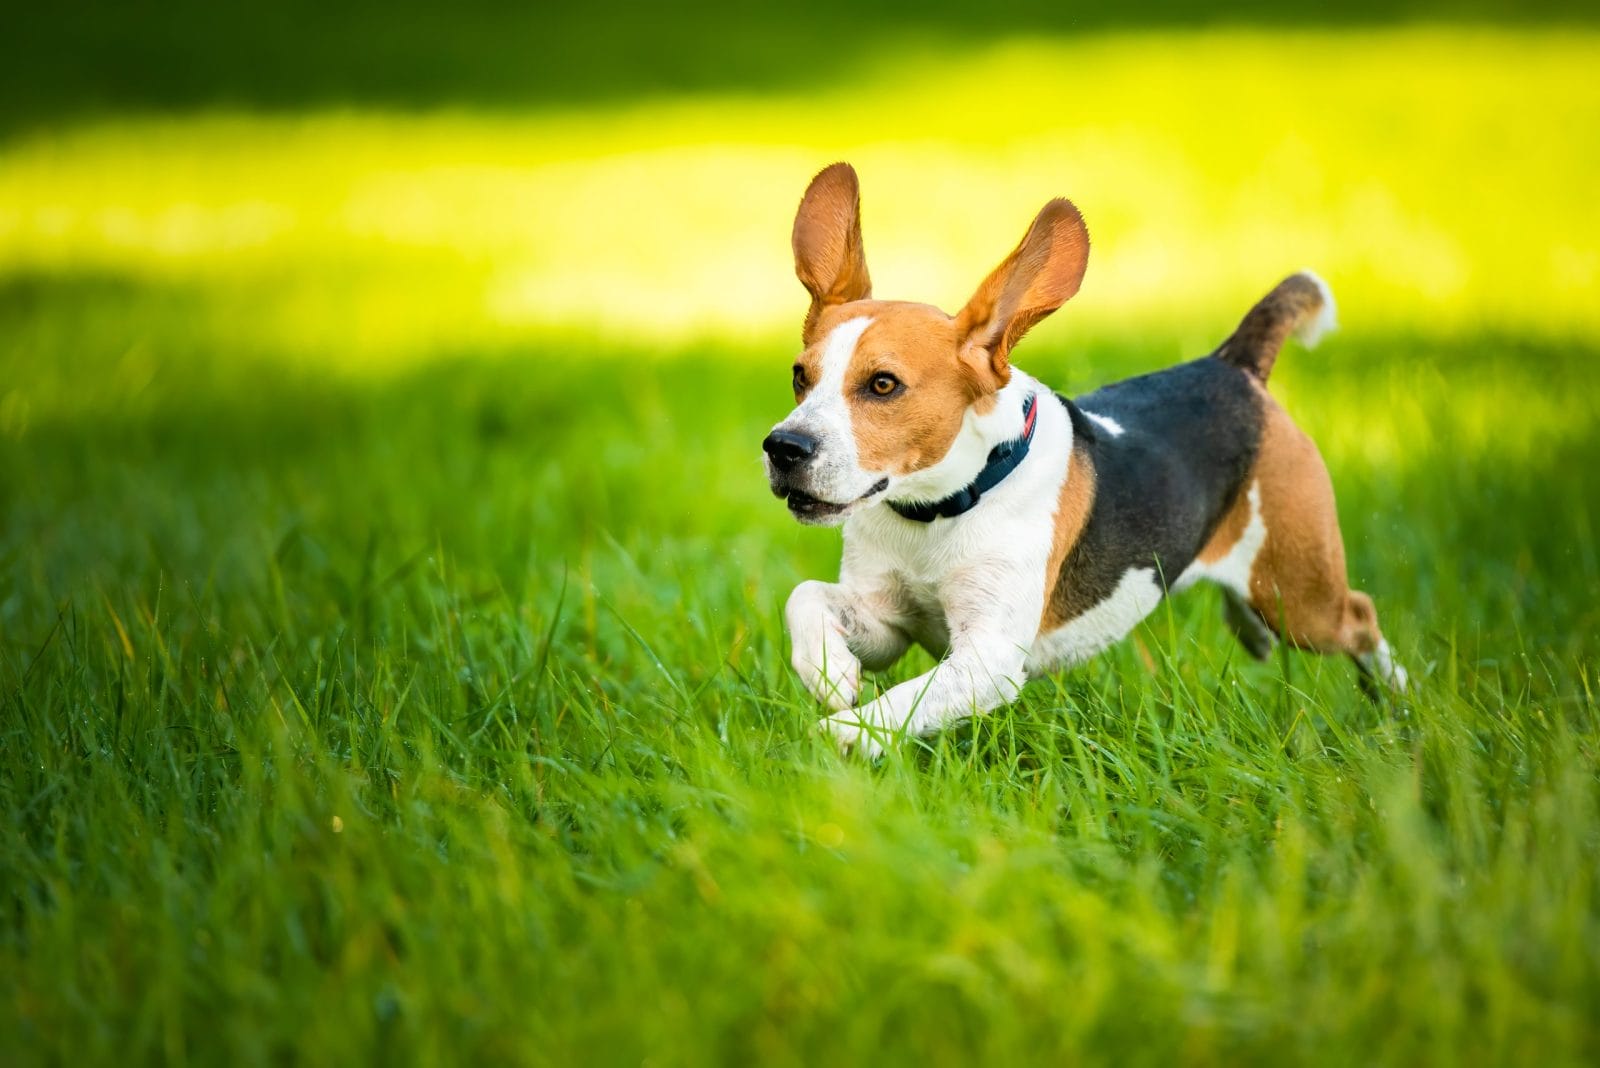 Beagle running through the grass